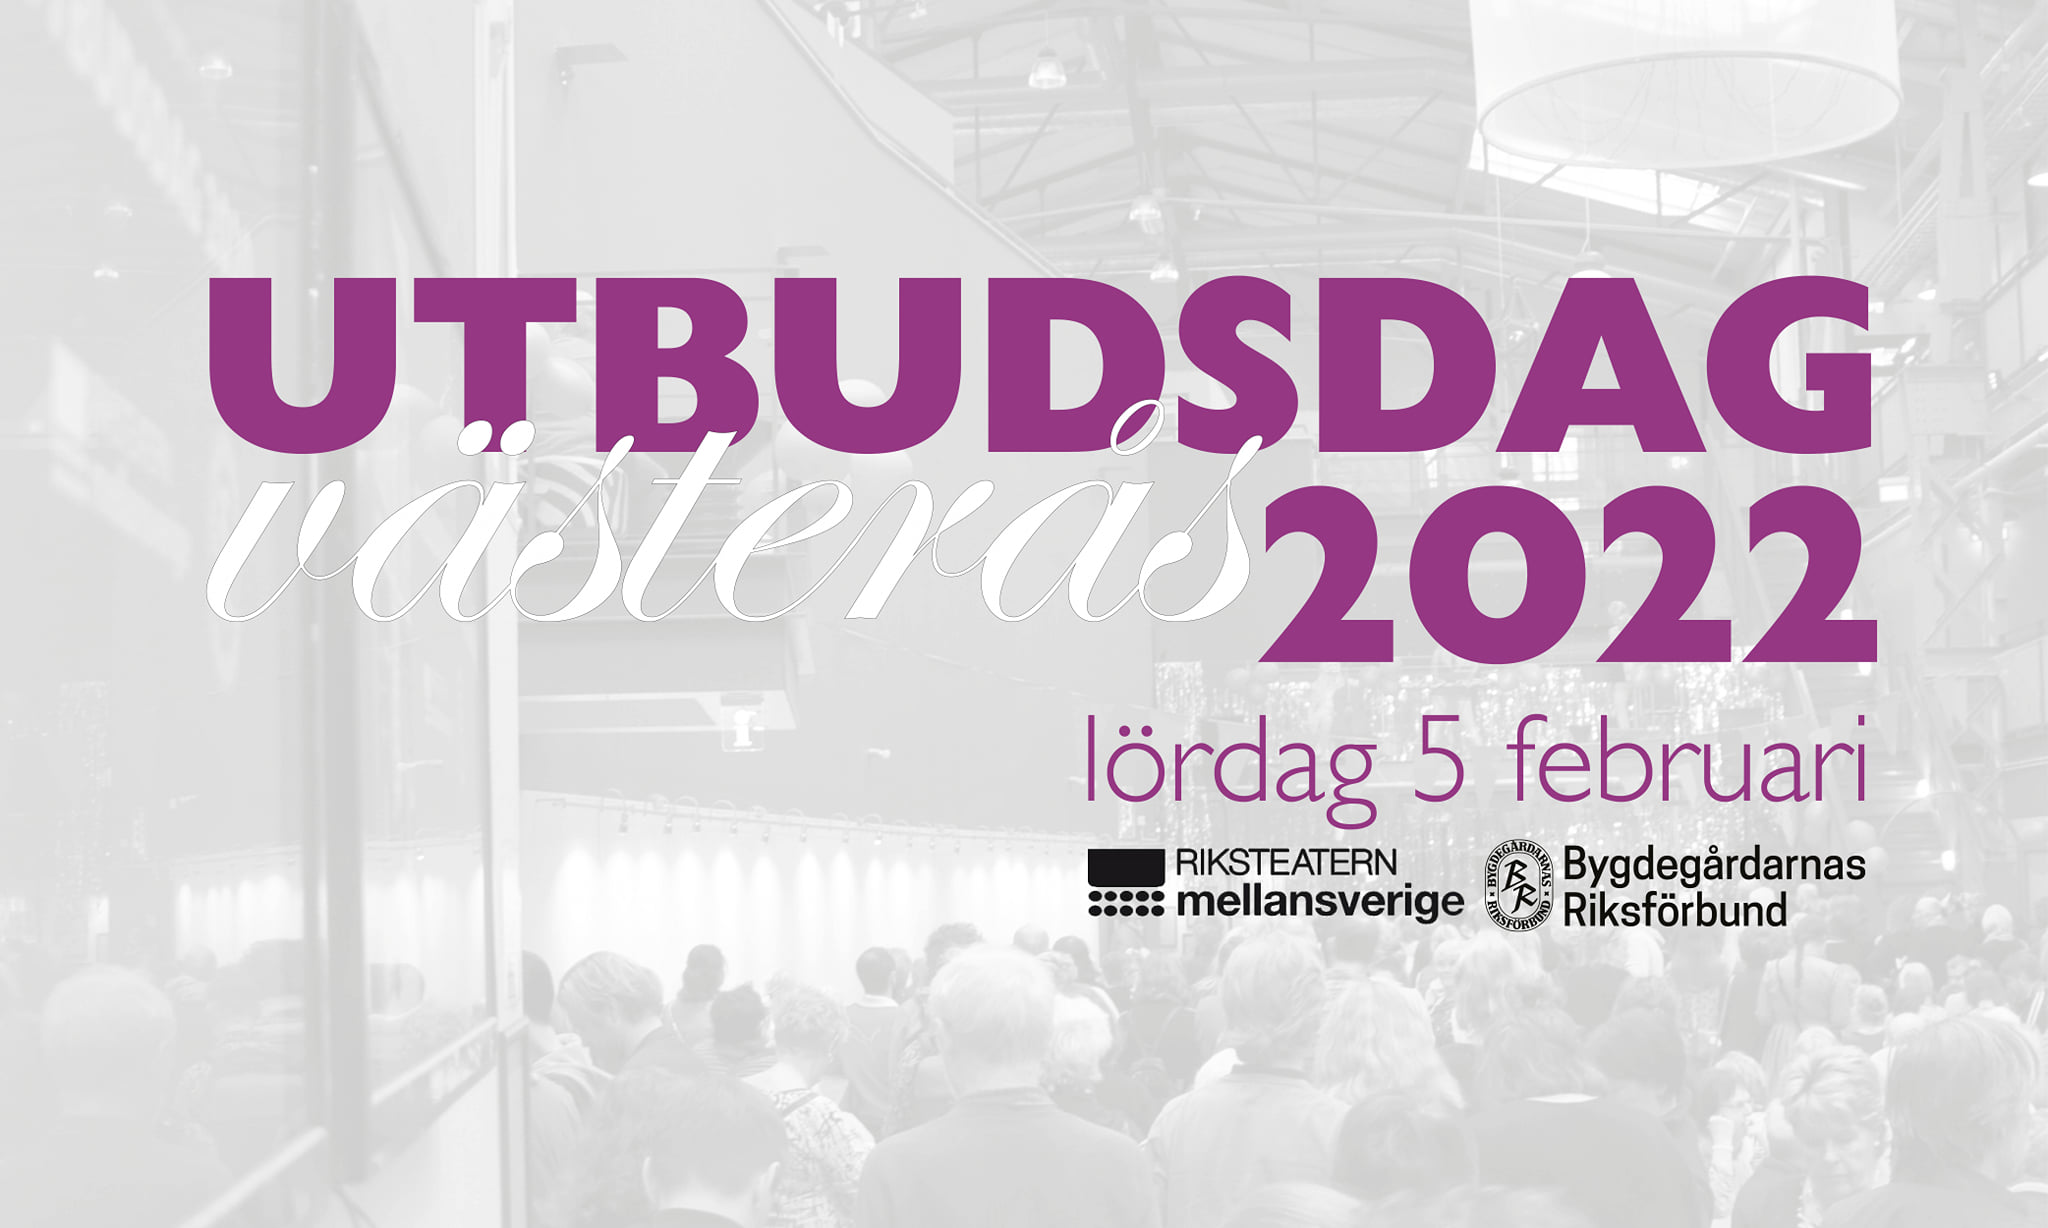 Utbudsdag 2022 i Västerås, lördag 5 februari. Logotyper: Riksteatern mellansverige och Bygdegårdarnas Riksförbund